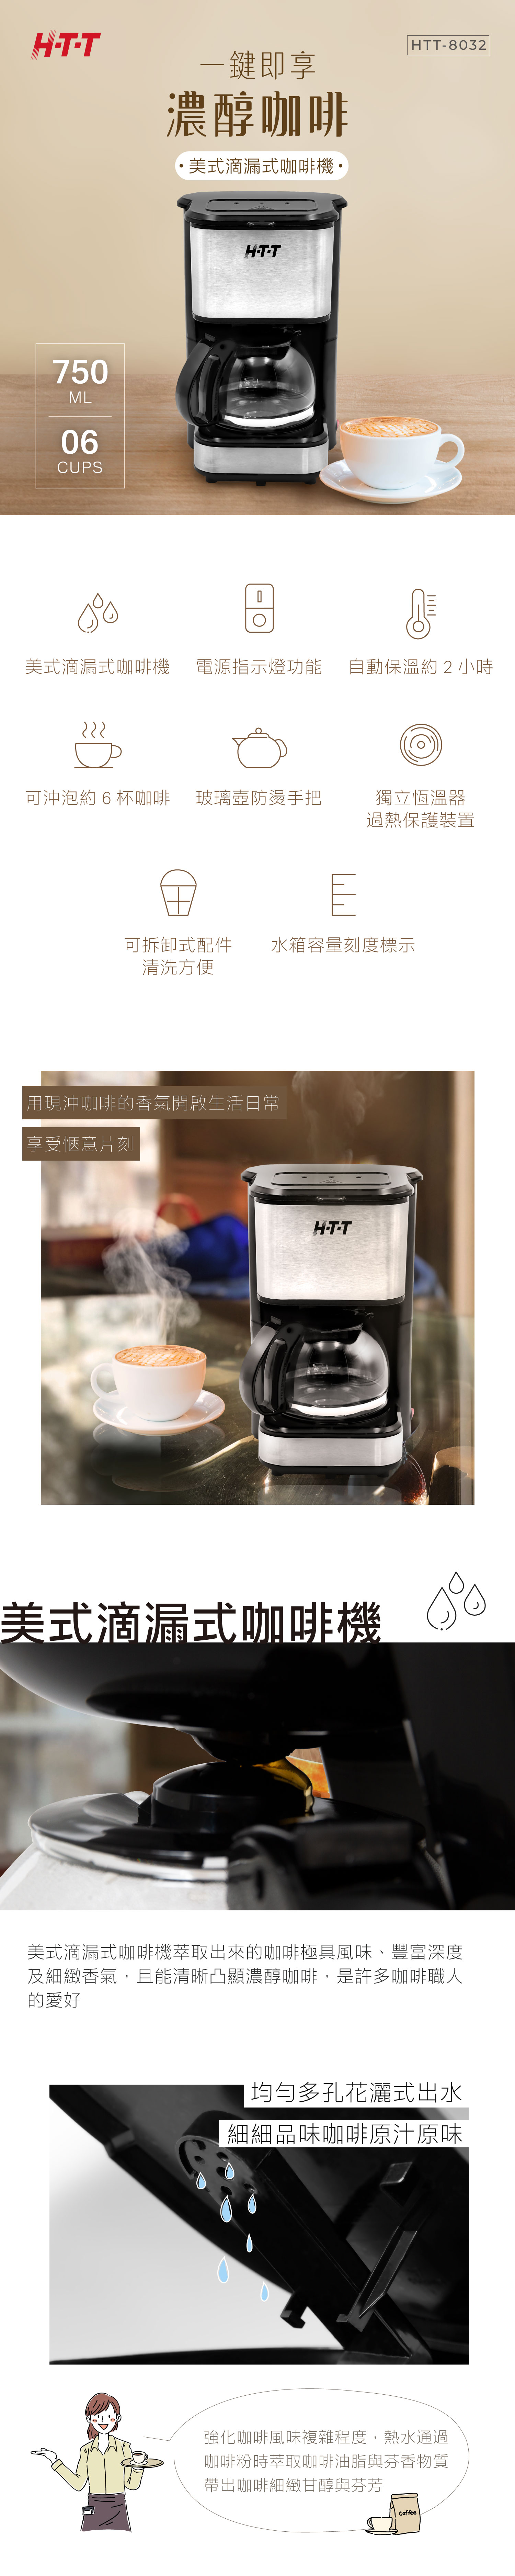 【HTT】美式滴漏式咖啡機 HTT-8032 (黑色)